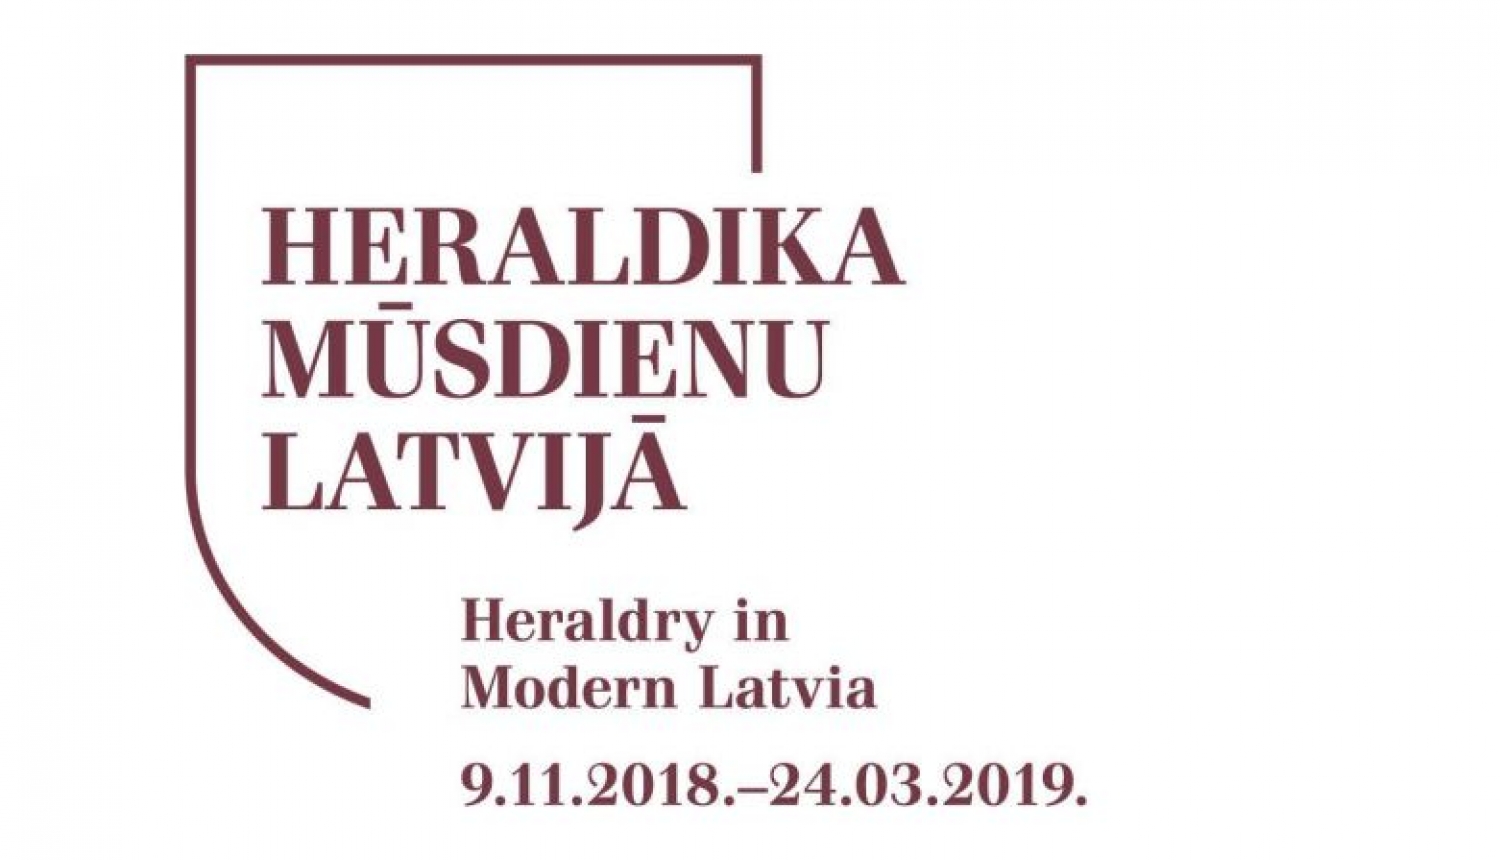 Valsts Heraldikas komisijas 30 gadu veikums būs apskatāms vienkopus izstādē “Heraldika mūsdienu Latvijā”